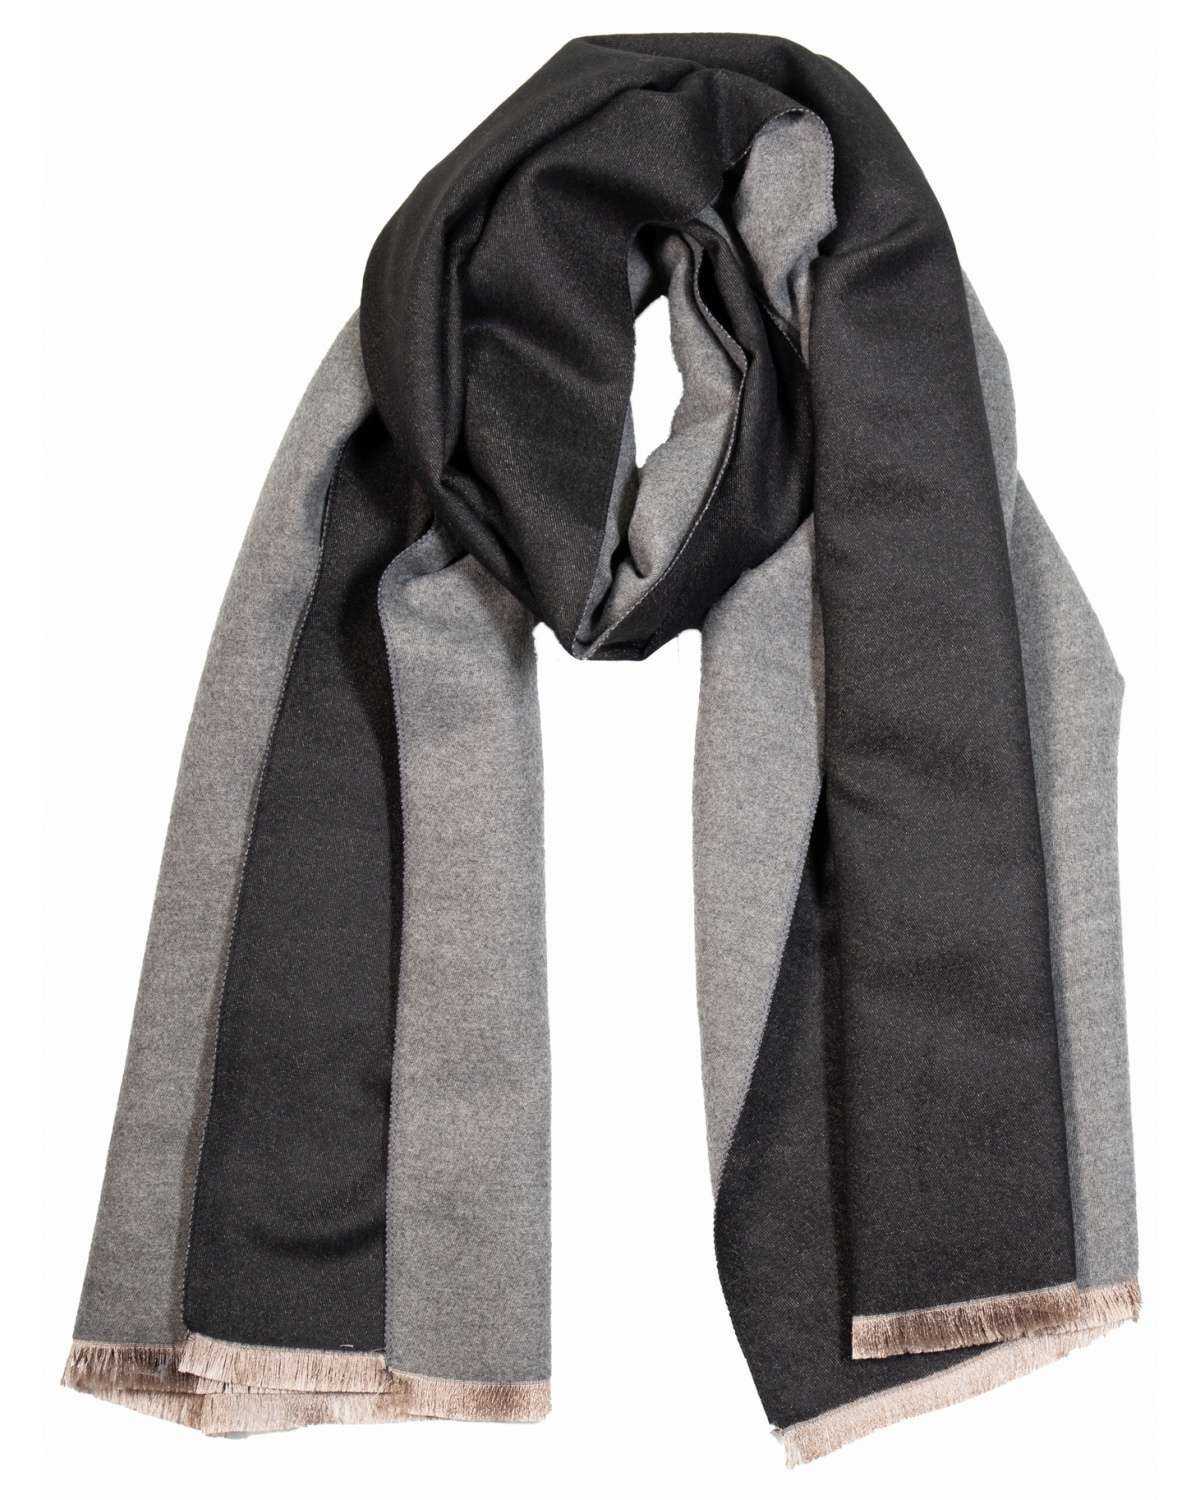 L'écharpe : un autre accessoire indispensable pour les hommes !